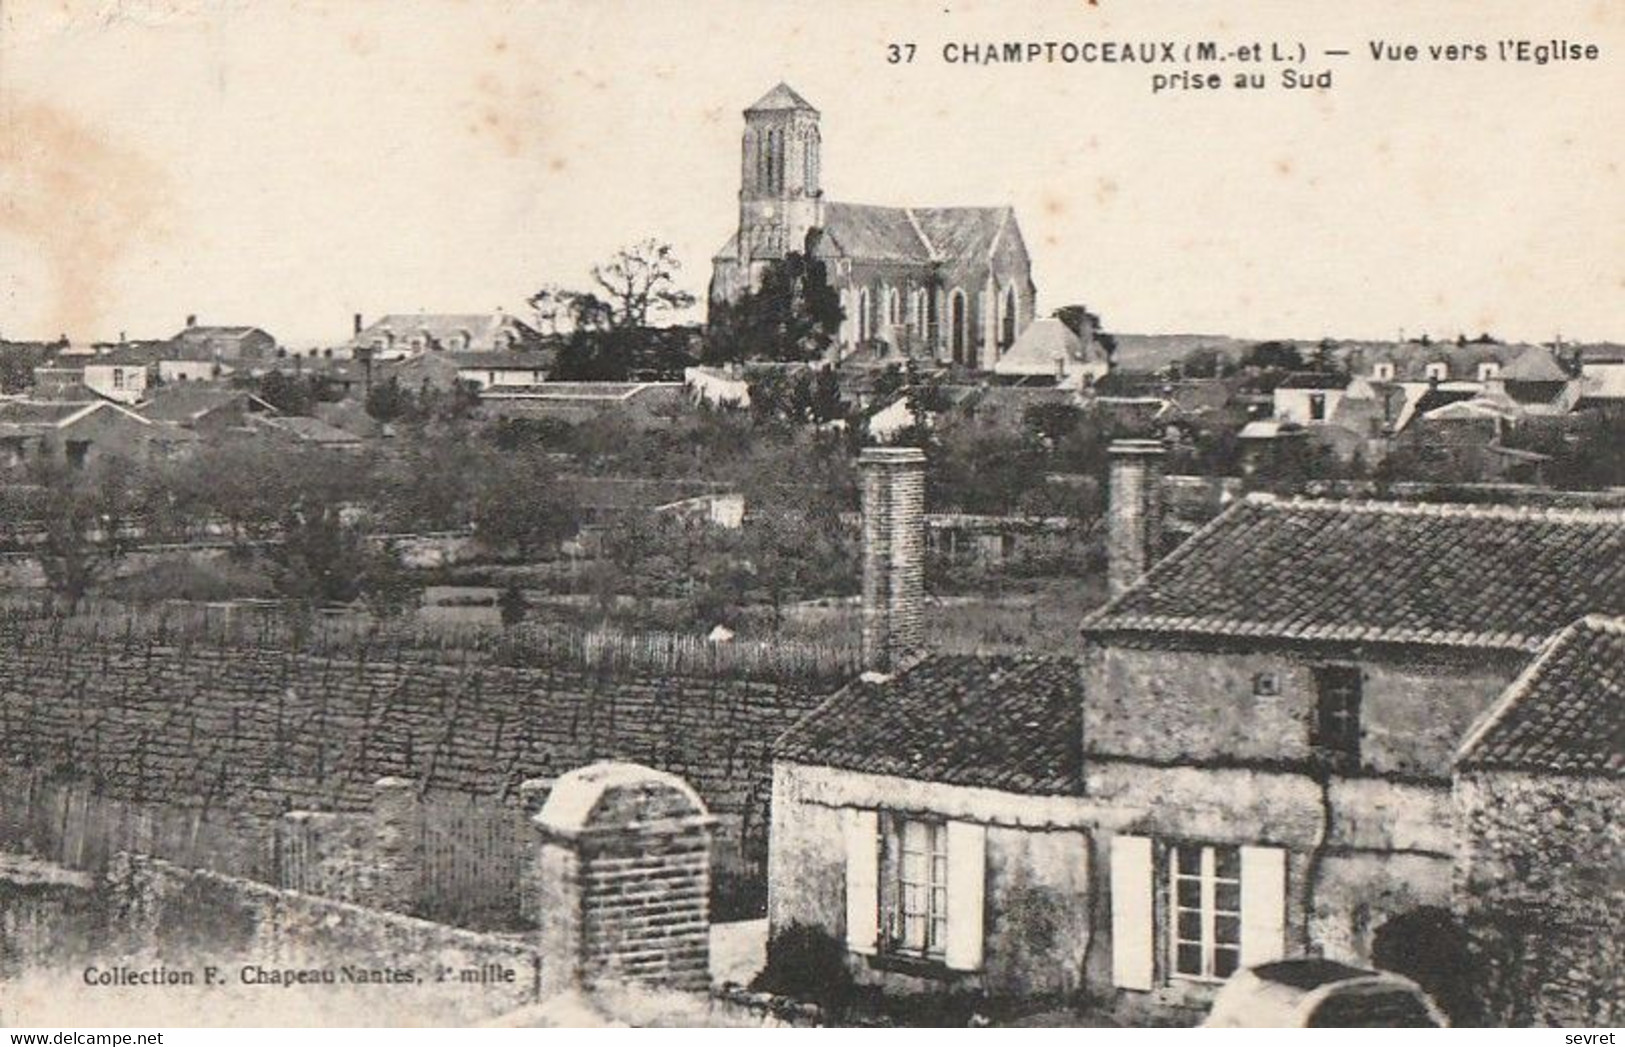 CHAMPTOCEAUX. - Vue Vers L'Eglise Prise Au Sud - Champtoceaux